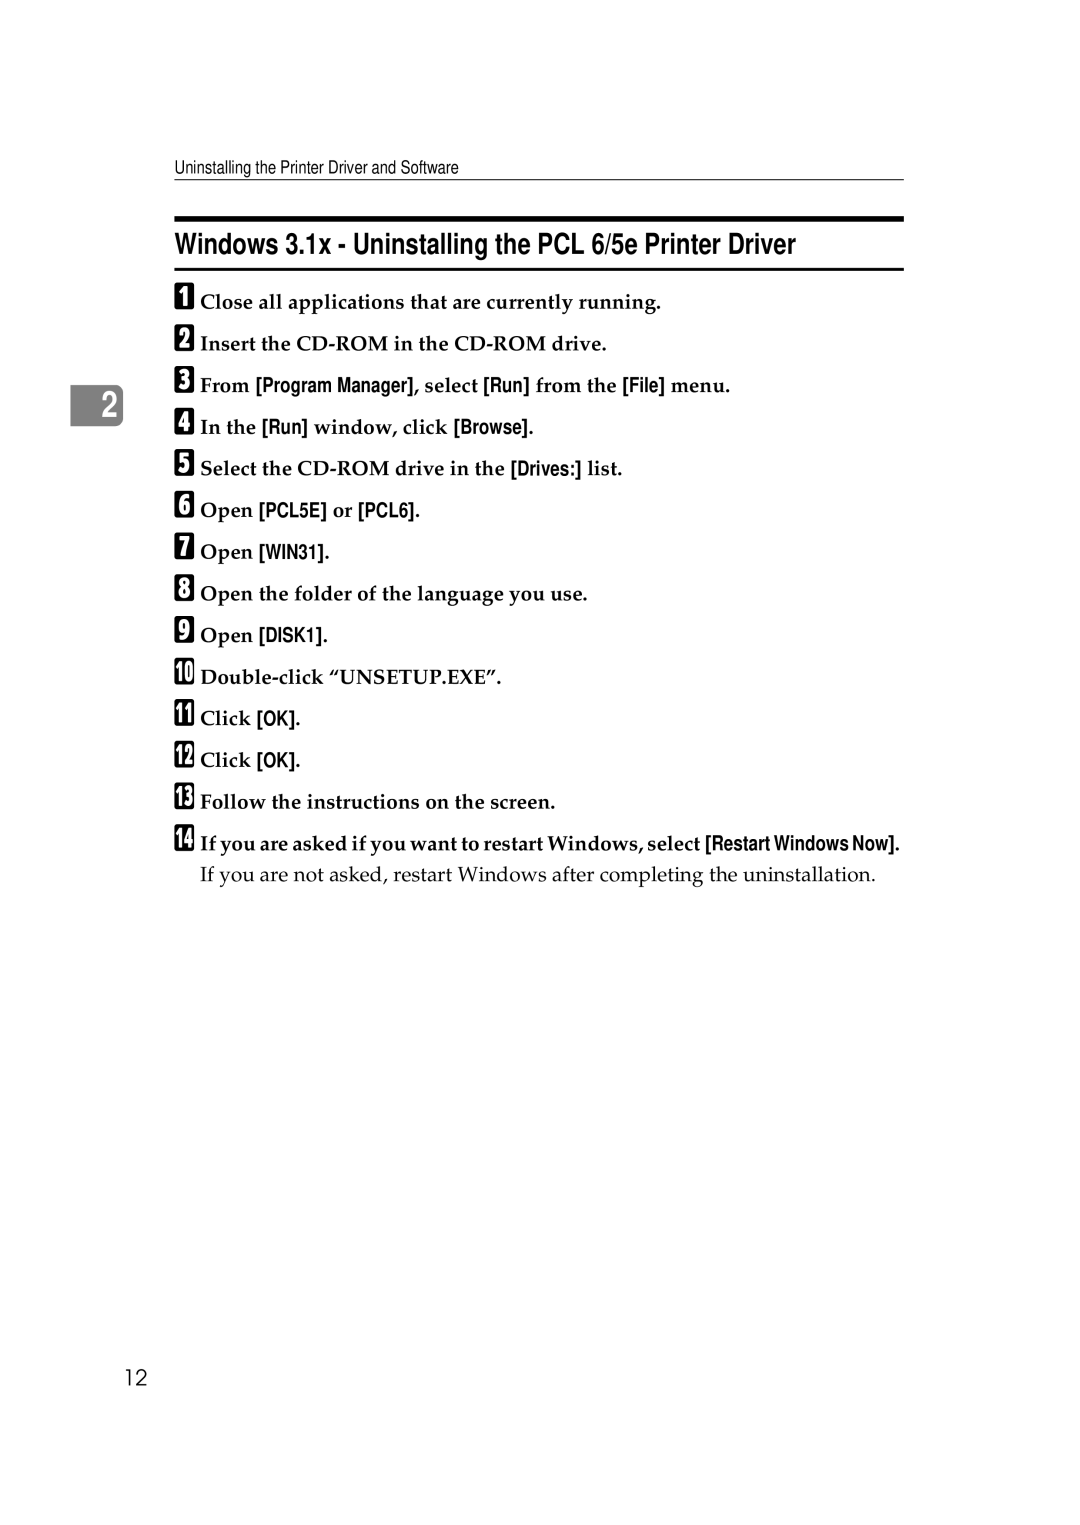 Ricoh Aficio AP2700 Windows 3.1x - Uninstalling the PCL 6/5e Printer Driver, F Open PCL5E or PCL6 G Open WIN31 